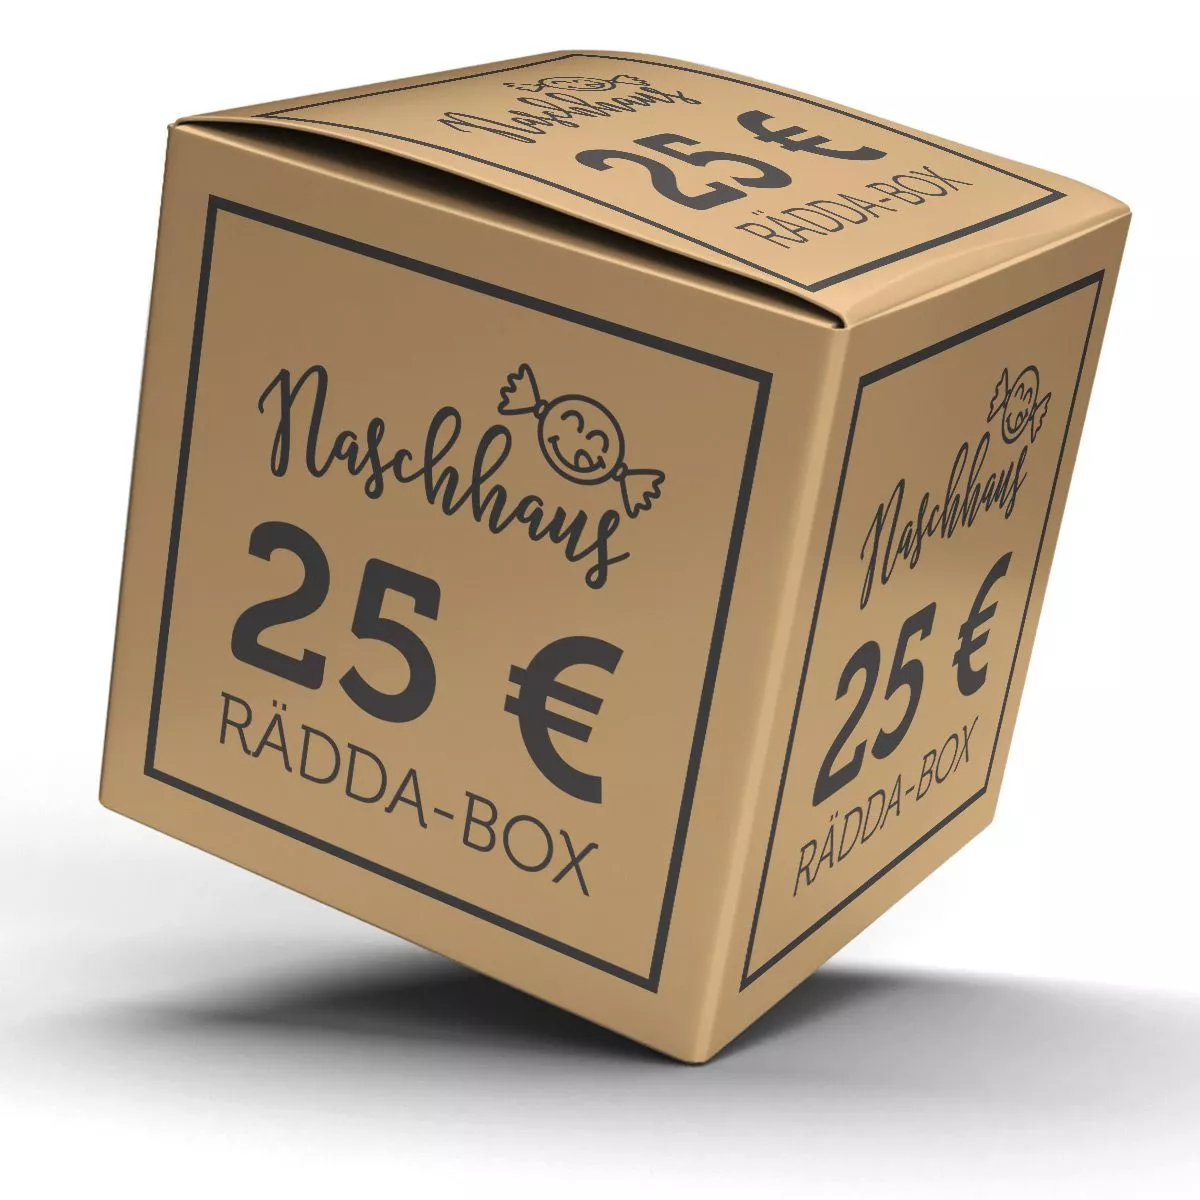 Die Naschhaus Rädda-Box: 14,99€ statt 25,00€ – Süßes vor der Tonne retten 1